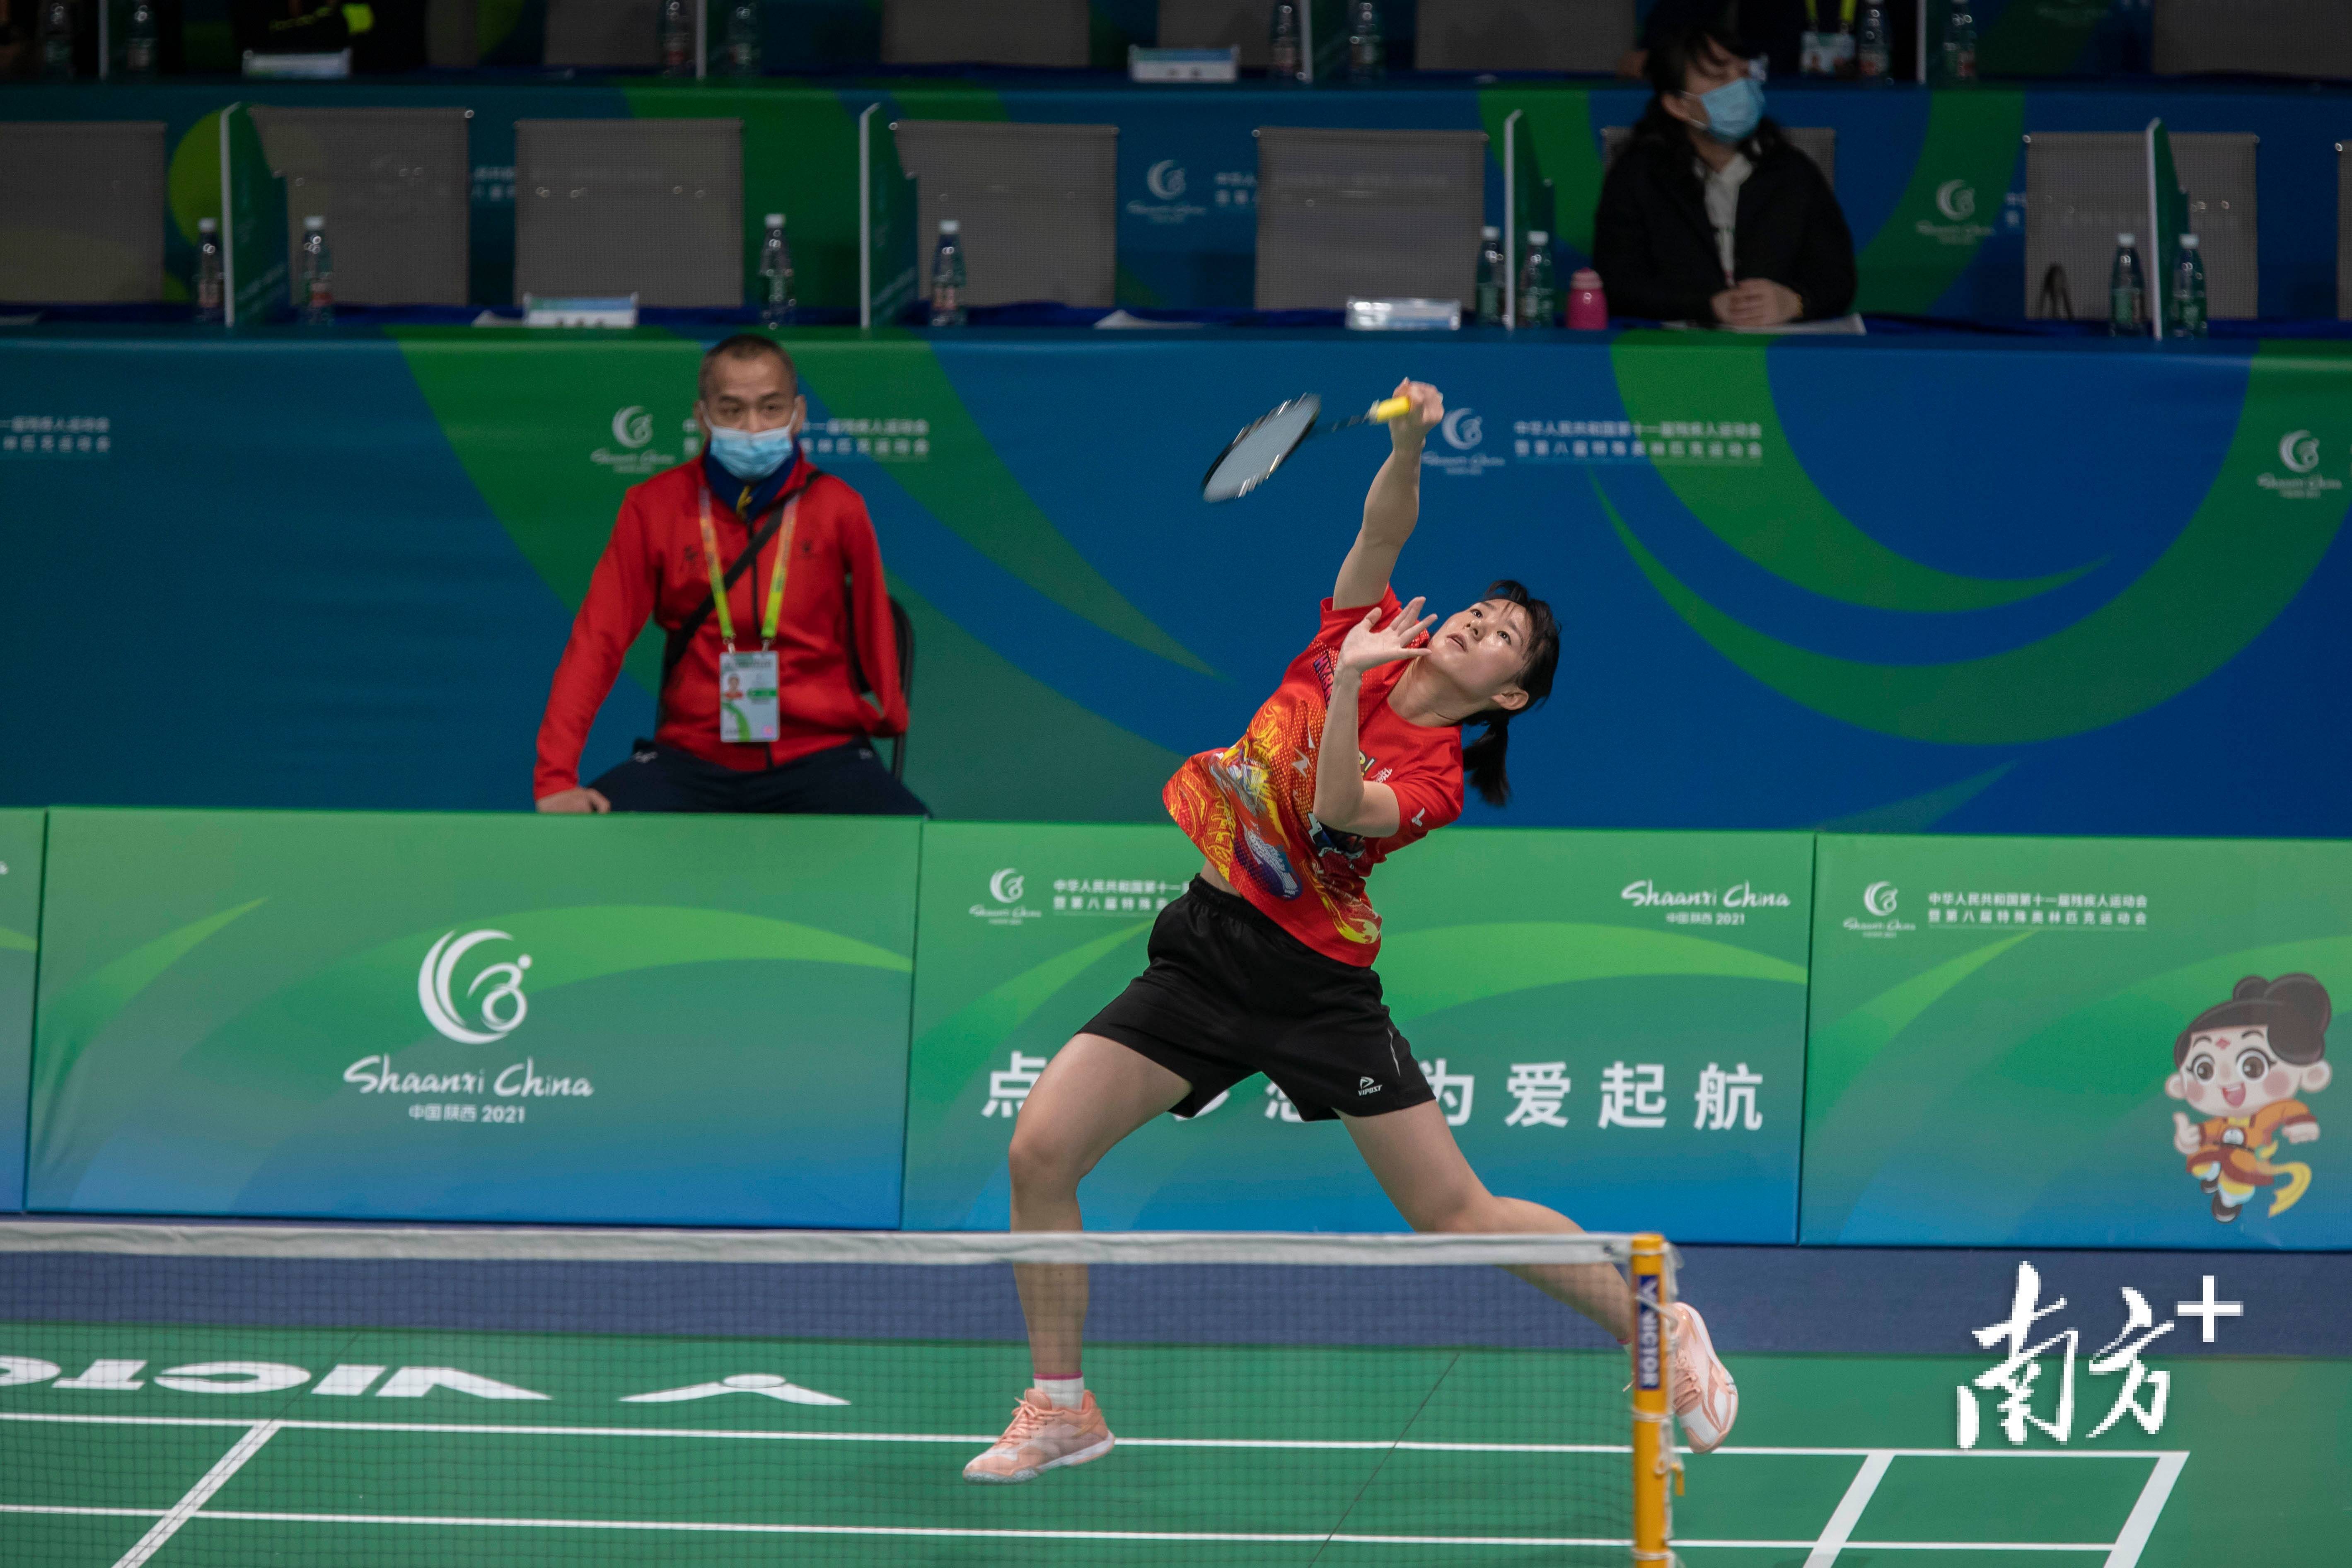 在羽毛球项目中,唐楷峰,李紫婷获听力混合双打金牌;唐楷峰获听力男子